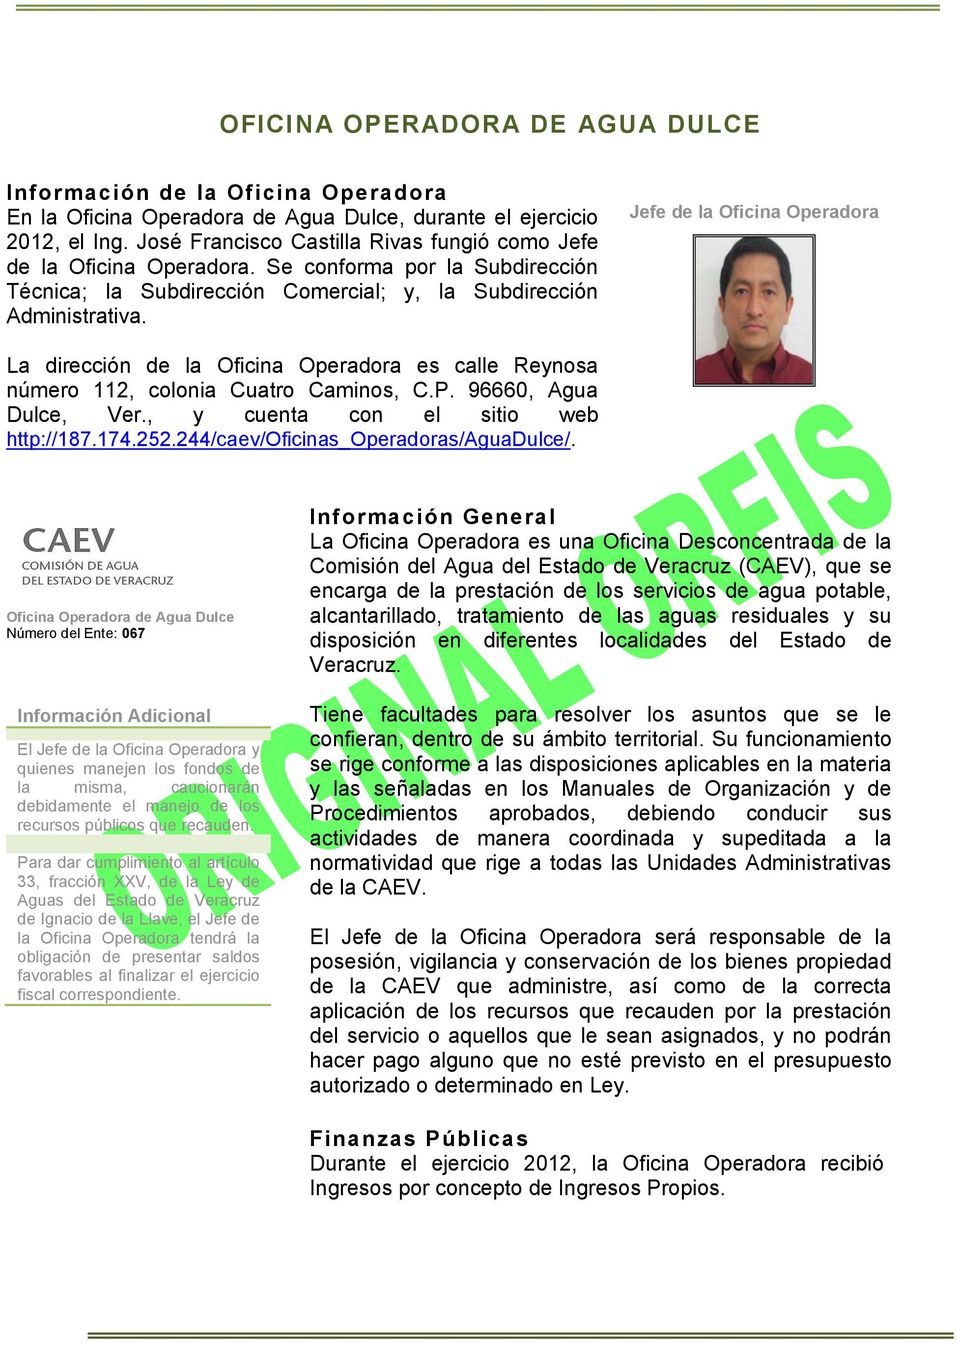 Jefe de la Oficina Operadora La dirección de la Oficina Operadora es calle Reynosa número 112, colonia Cuatro Caminos, C.P. 96660, Agua Dulce, Ver., y cuenta con el sitio web http://187.174.252.